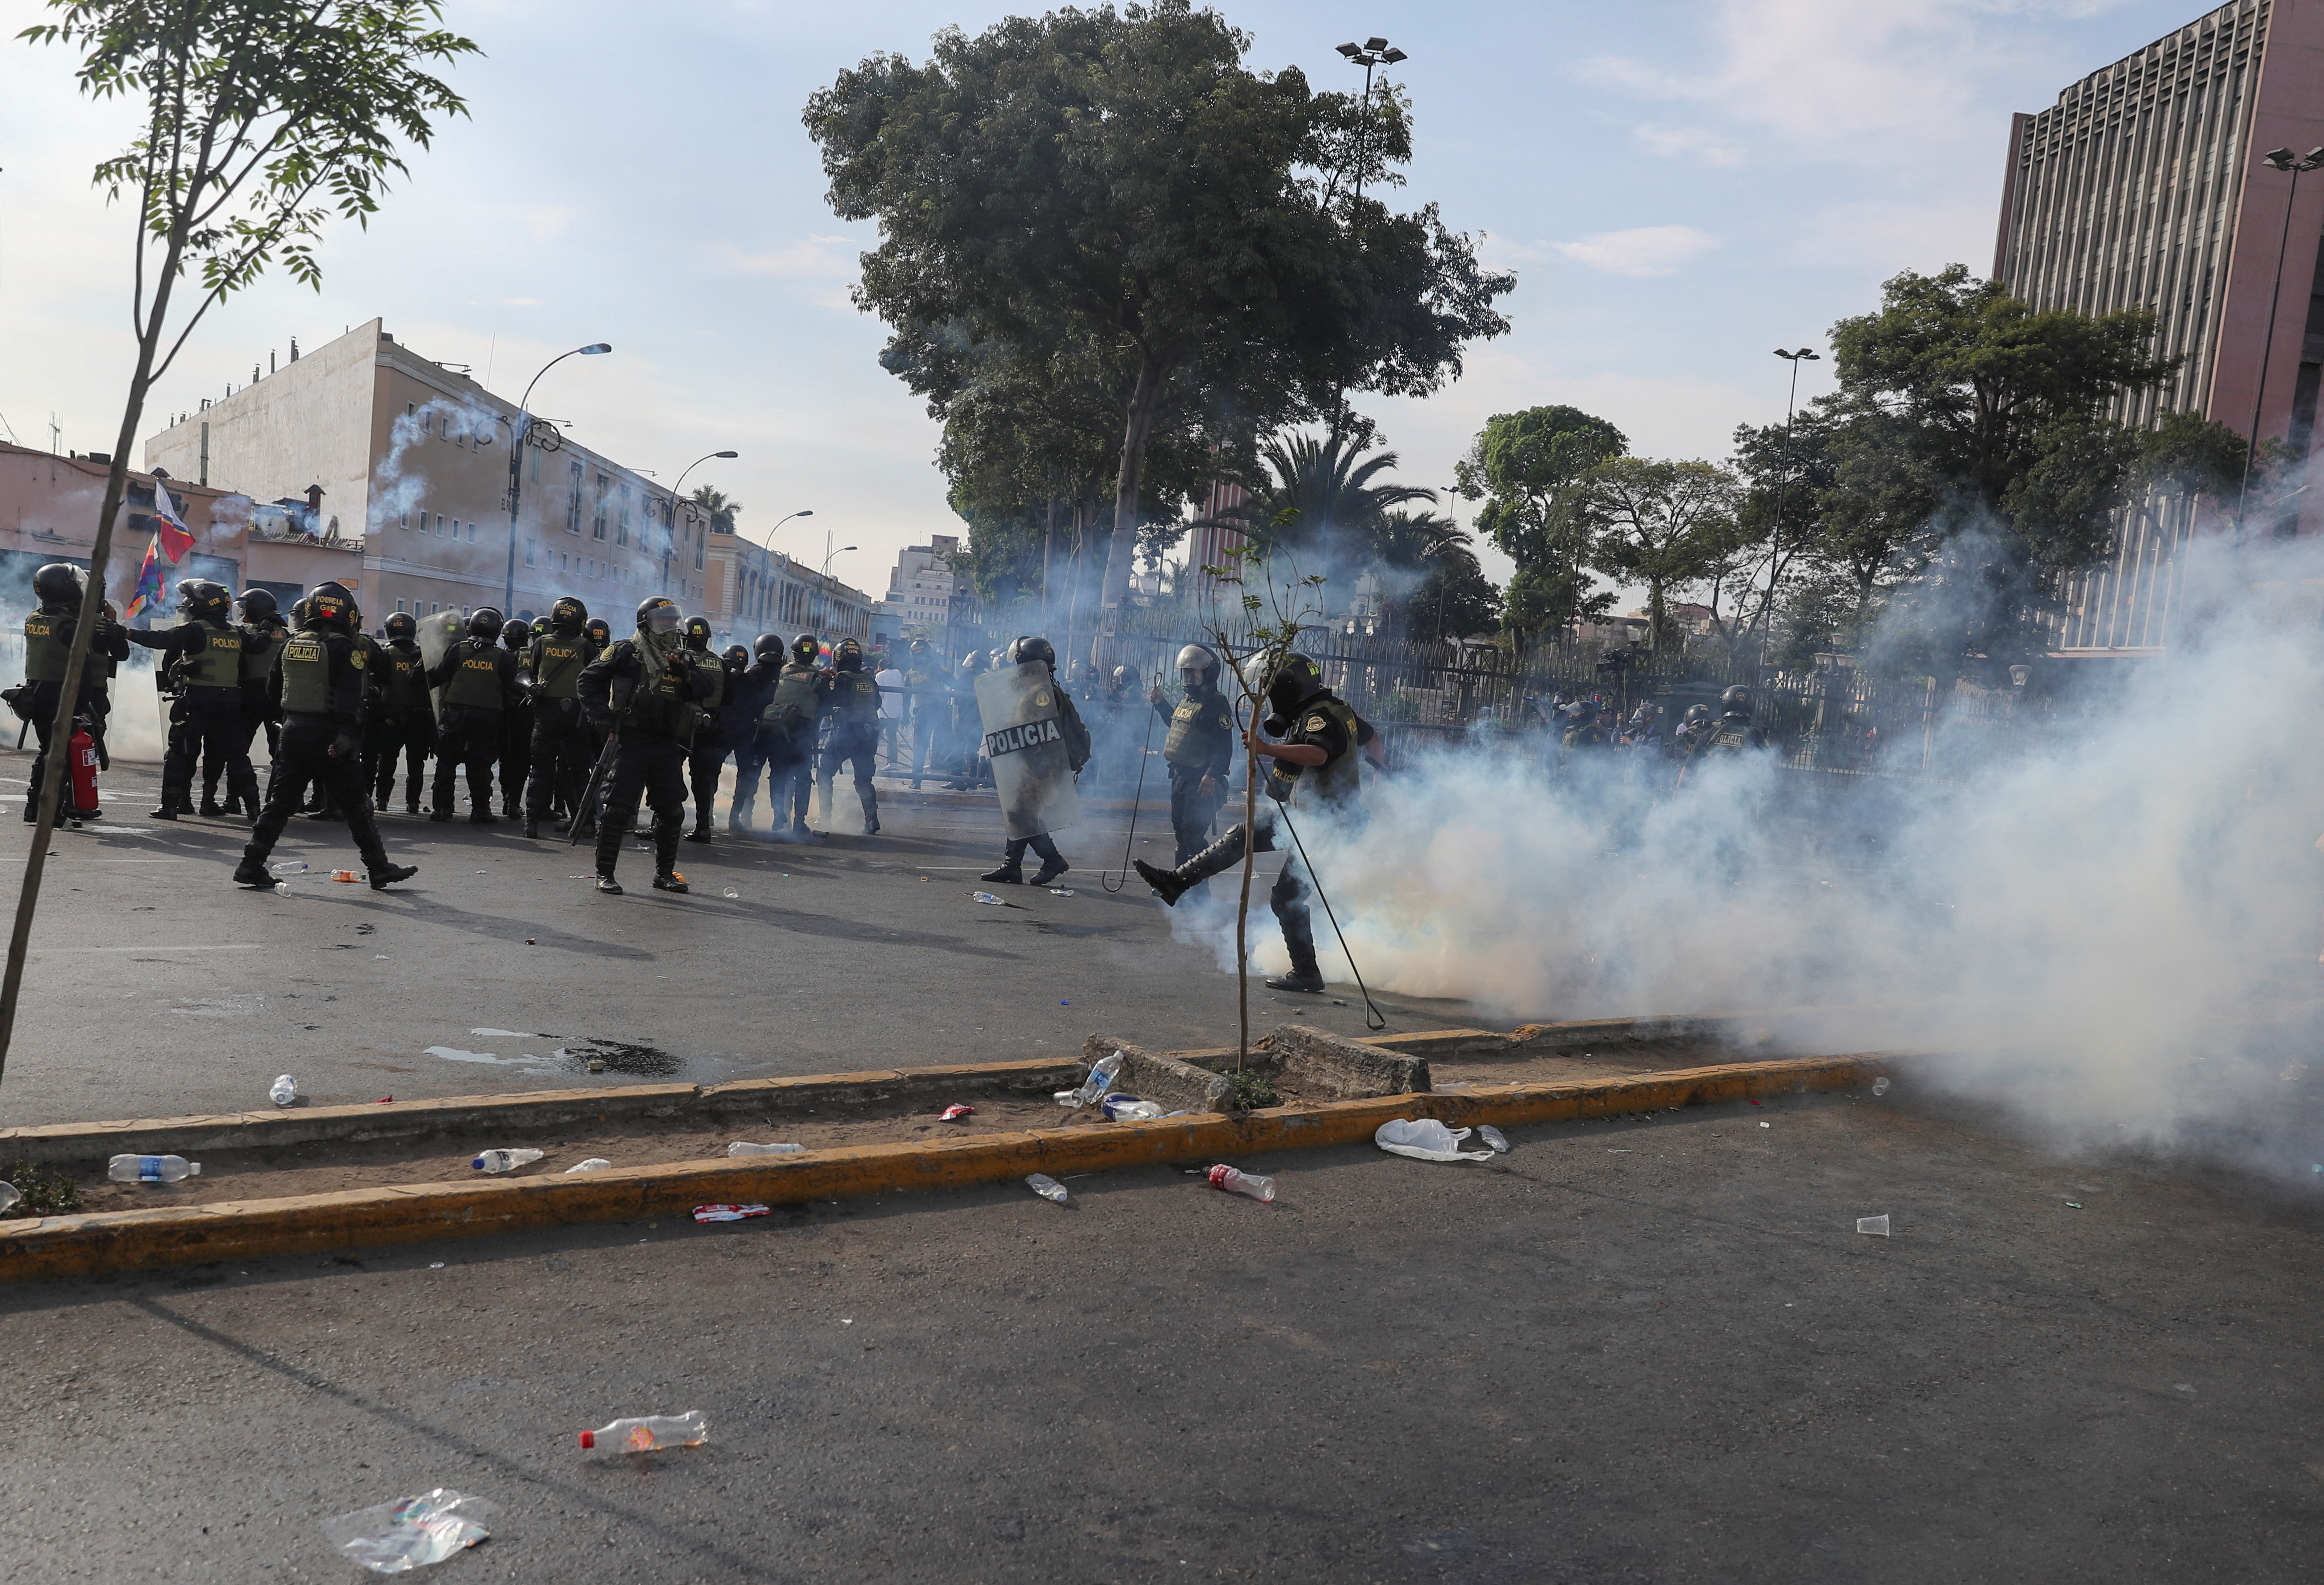 Con bombas lacrimógenas y piedras se enfrentan policías y manifestantes en protestas por la Toma de Lima REUTERS/Sebastian Castaneda